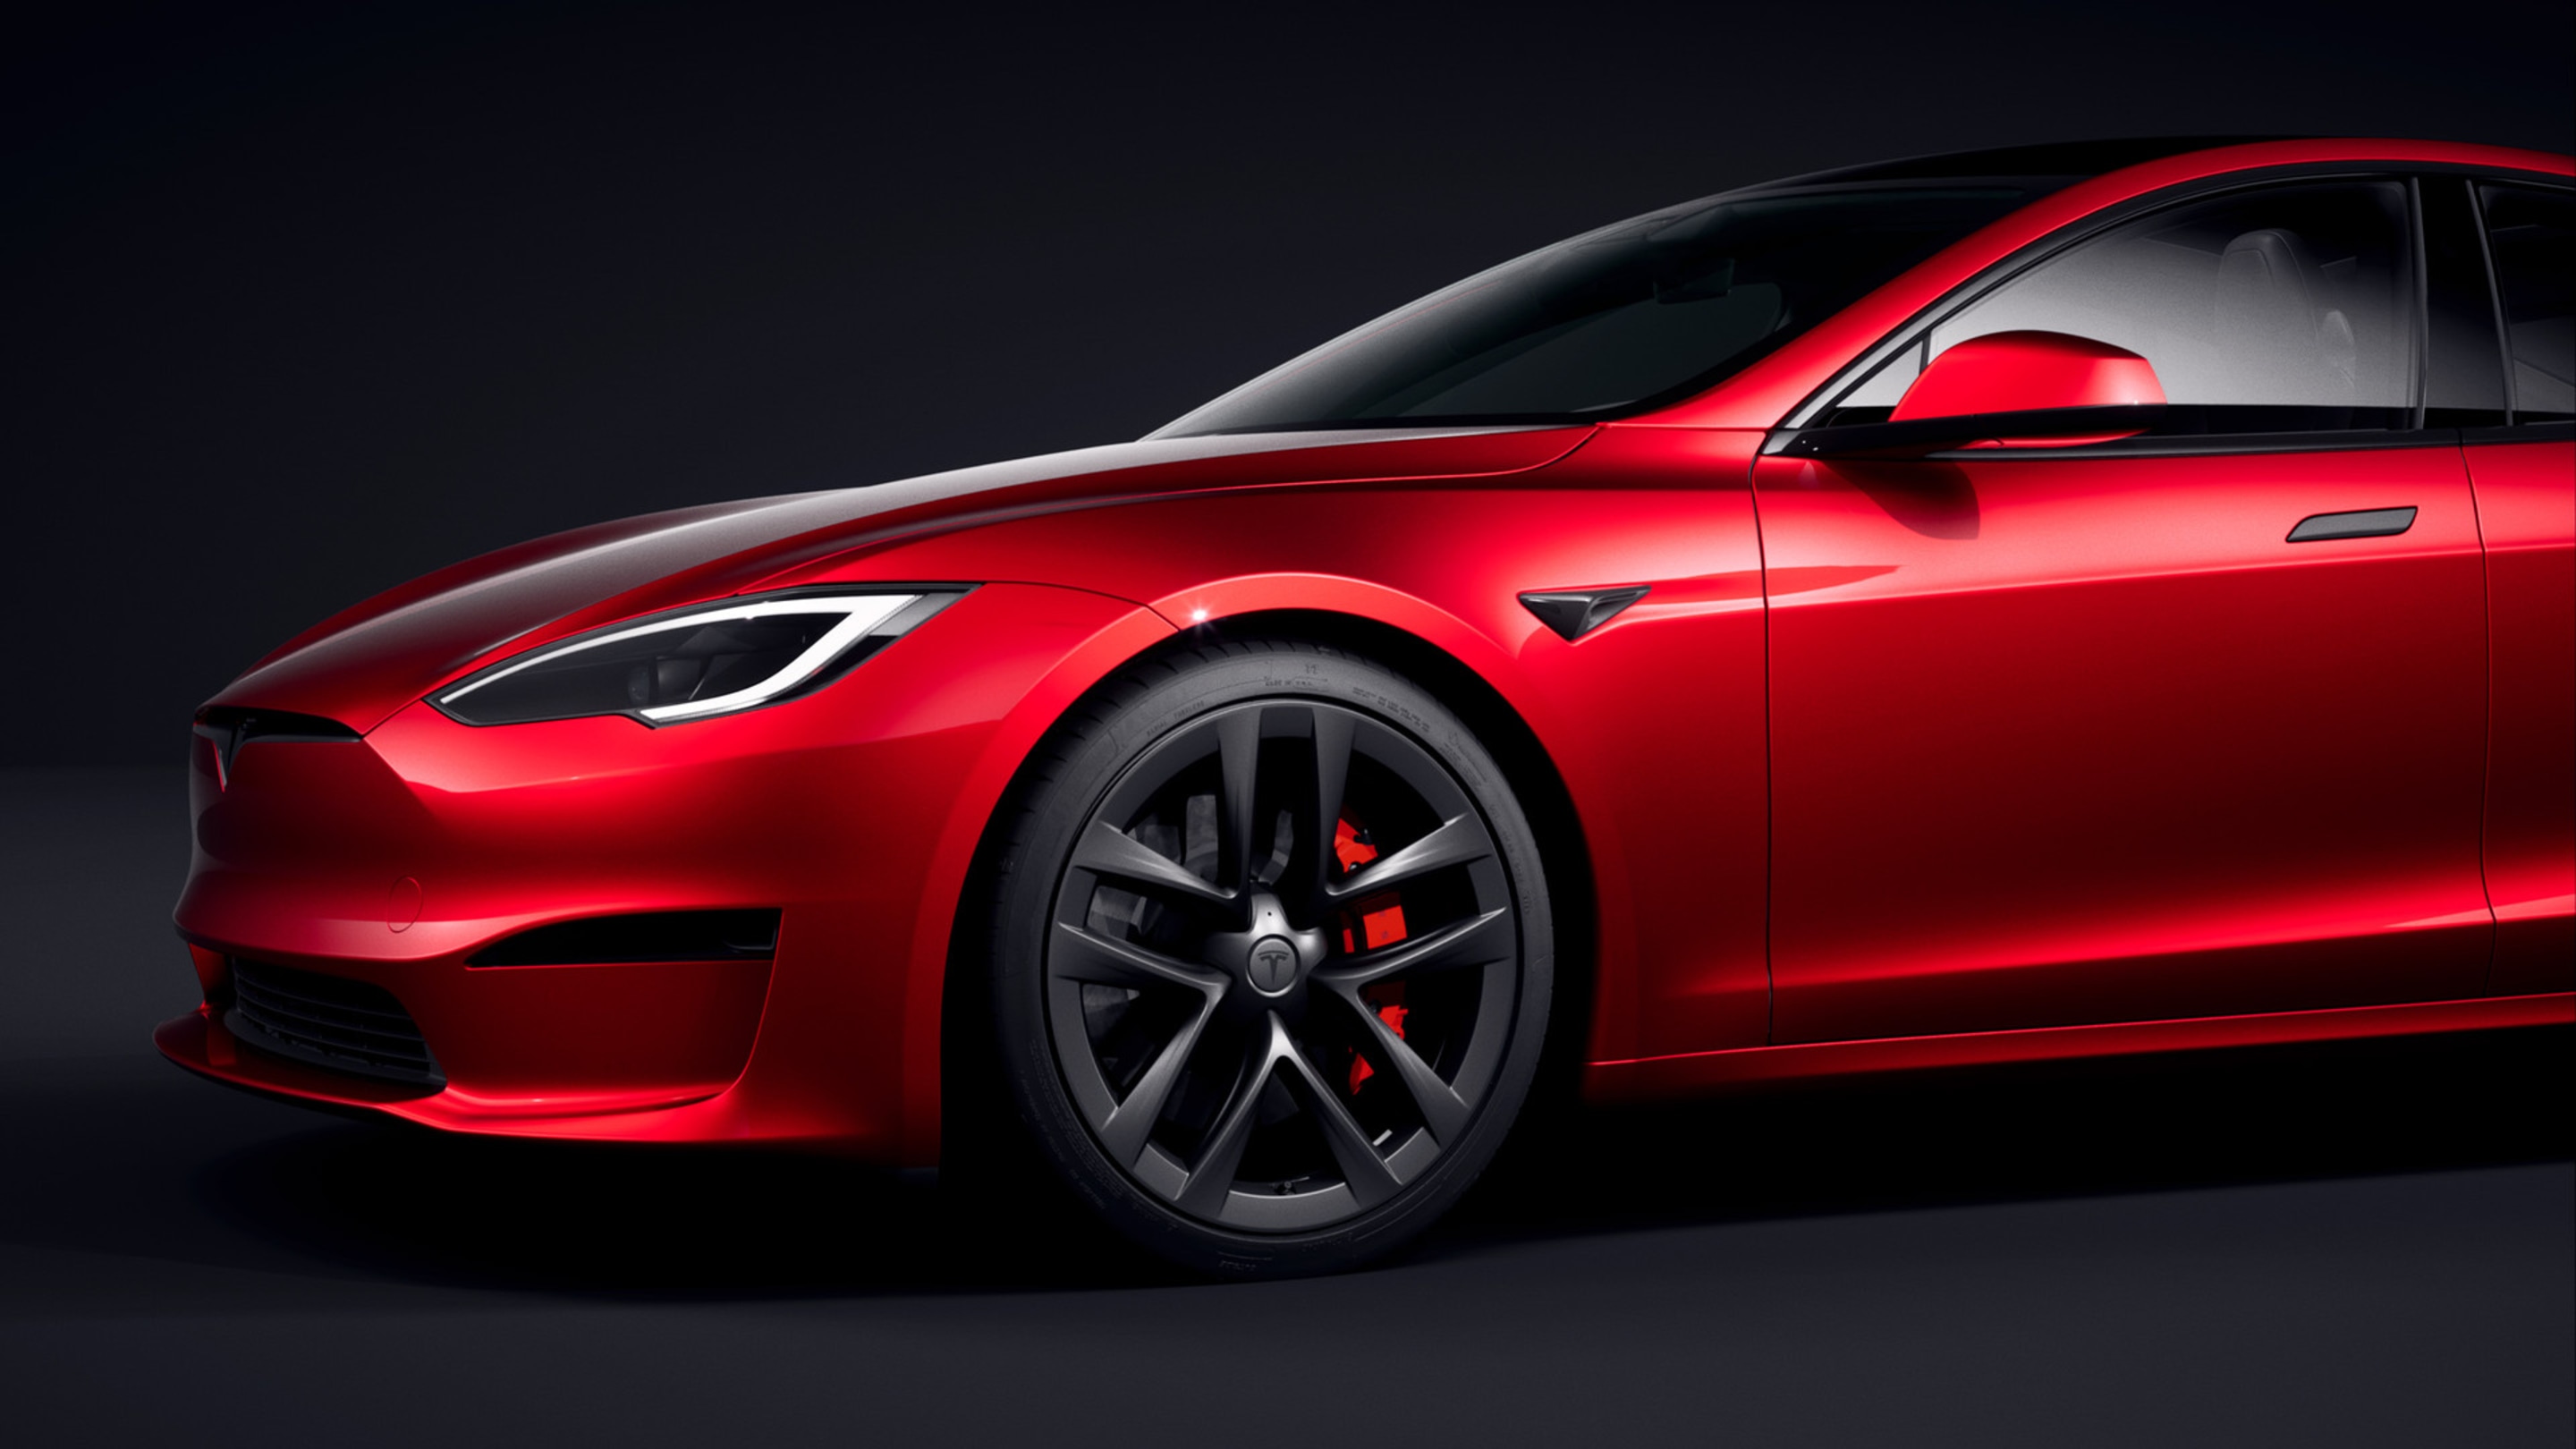 Vue avant de la Model S rouge